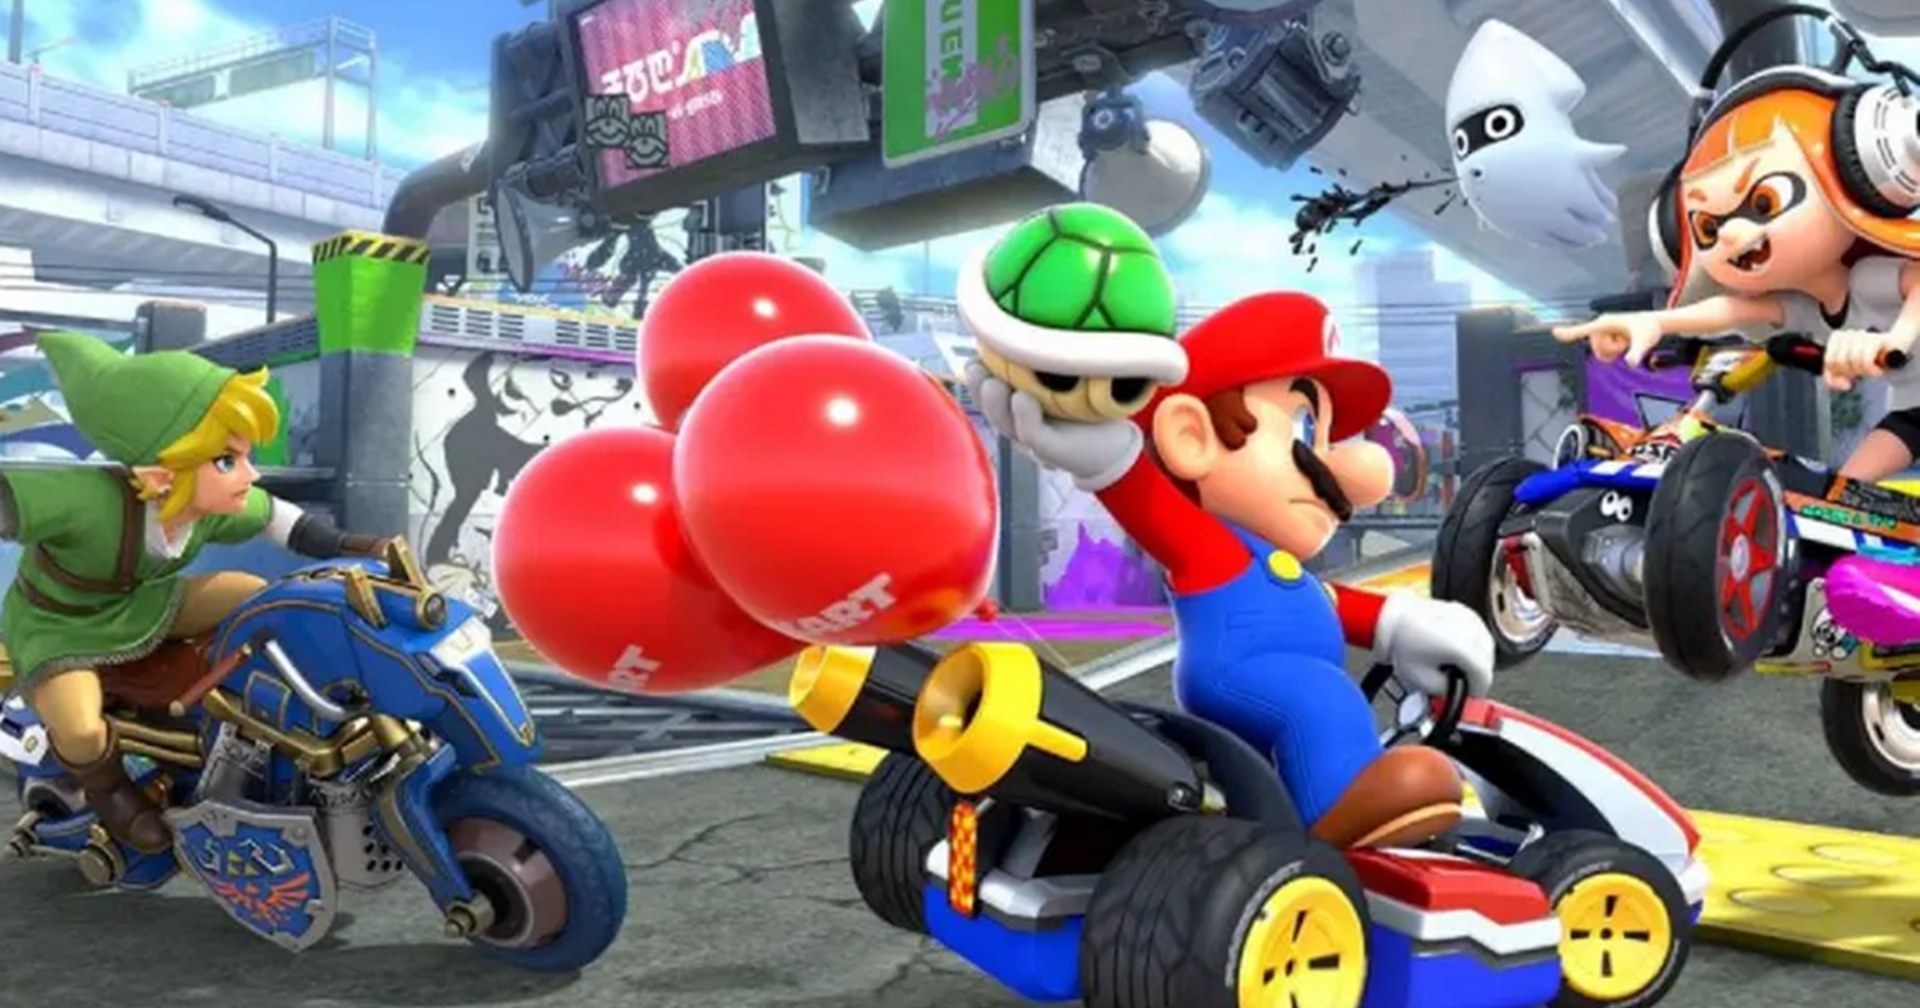 ผู้สร้างบอกเคล็ดลับทำให้เกม Mario Kart ได้รับความนิยม